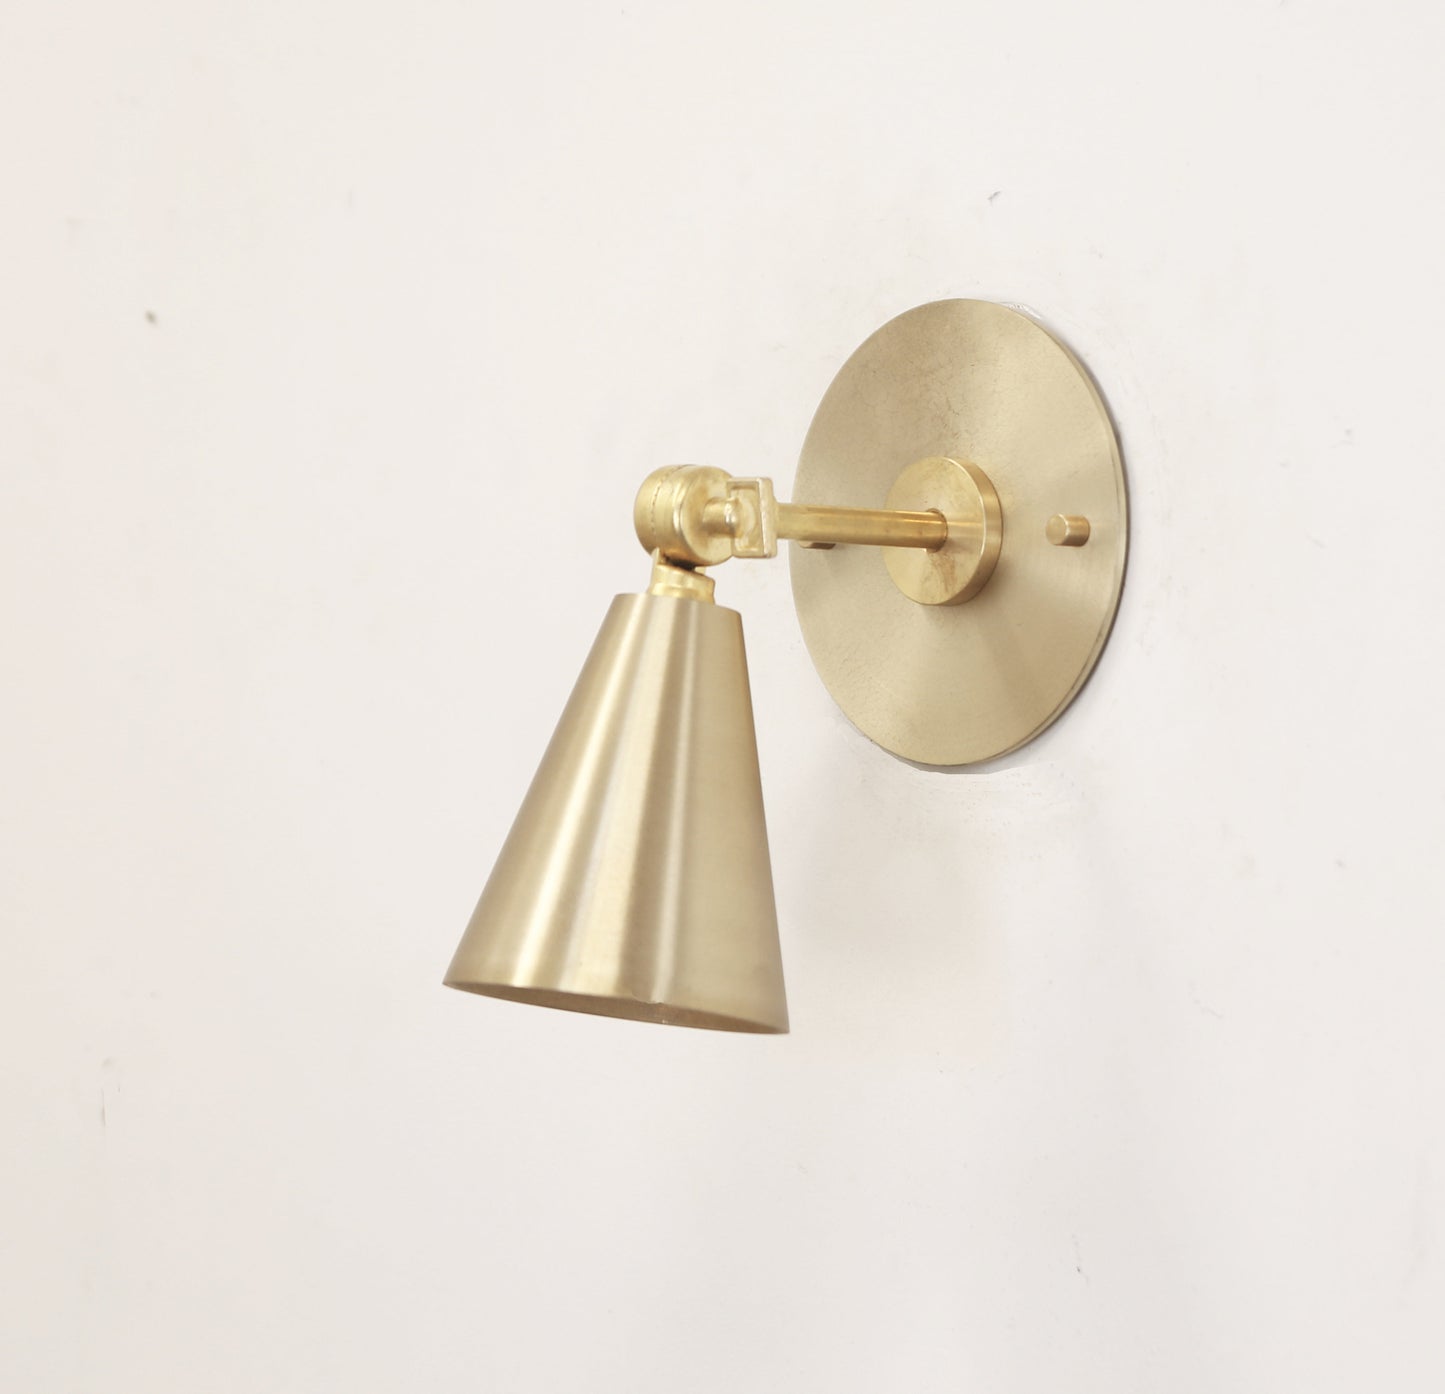 Brass Wall Sconce  light, Modern brass light,  Mid Century brass wall sconce light, Minimal Sconce Light, Thin Canopy Brass Light